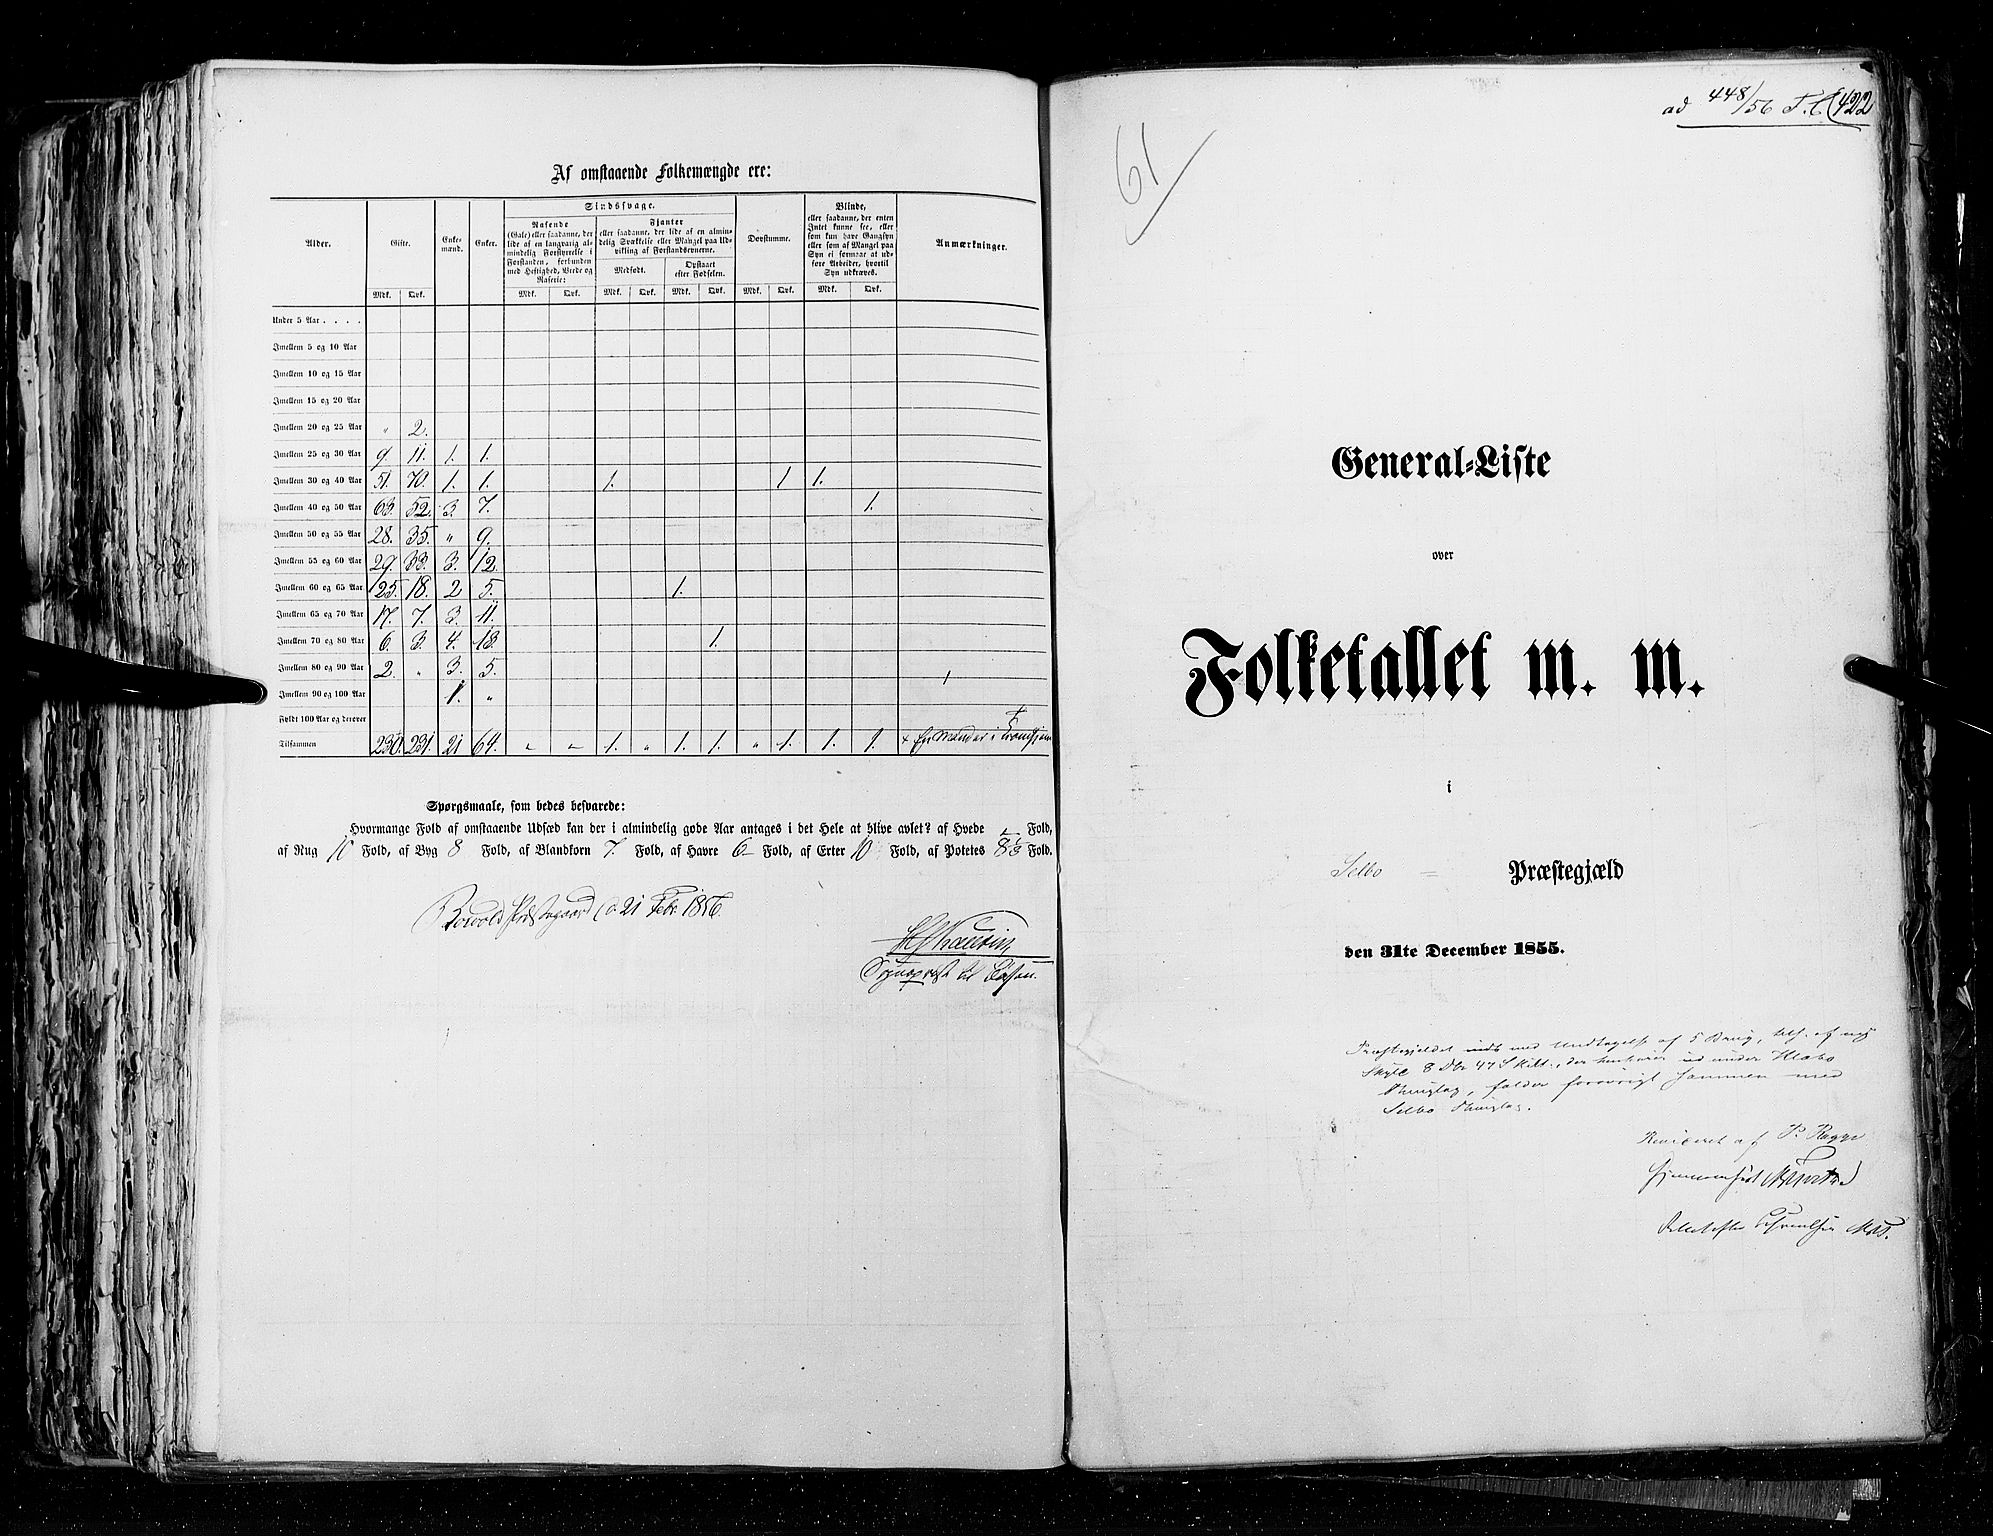 RA, Census 1855, vol. 5: Nordre Bergenhus amt, Romsdal amt og Søndre Trondhjem amt, 1855, p. 422